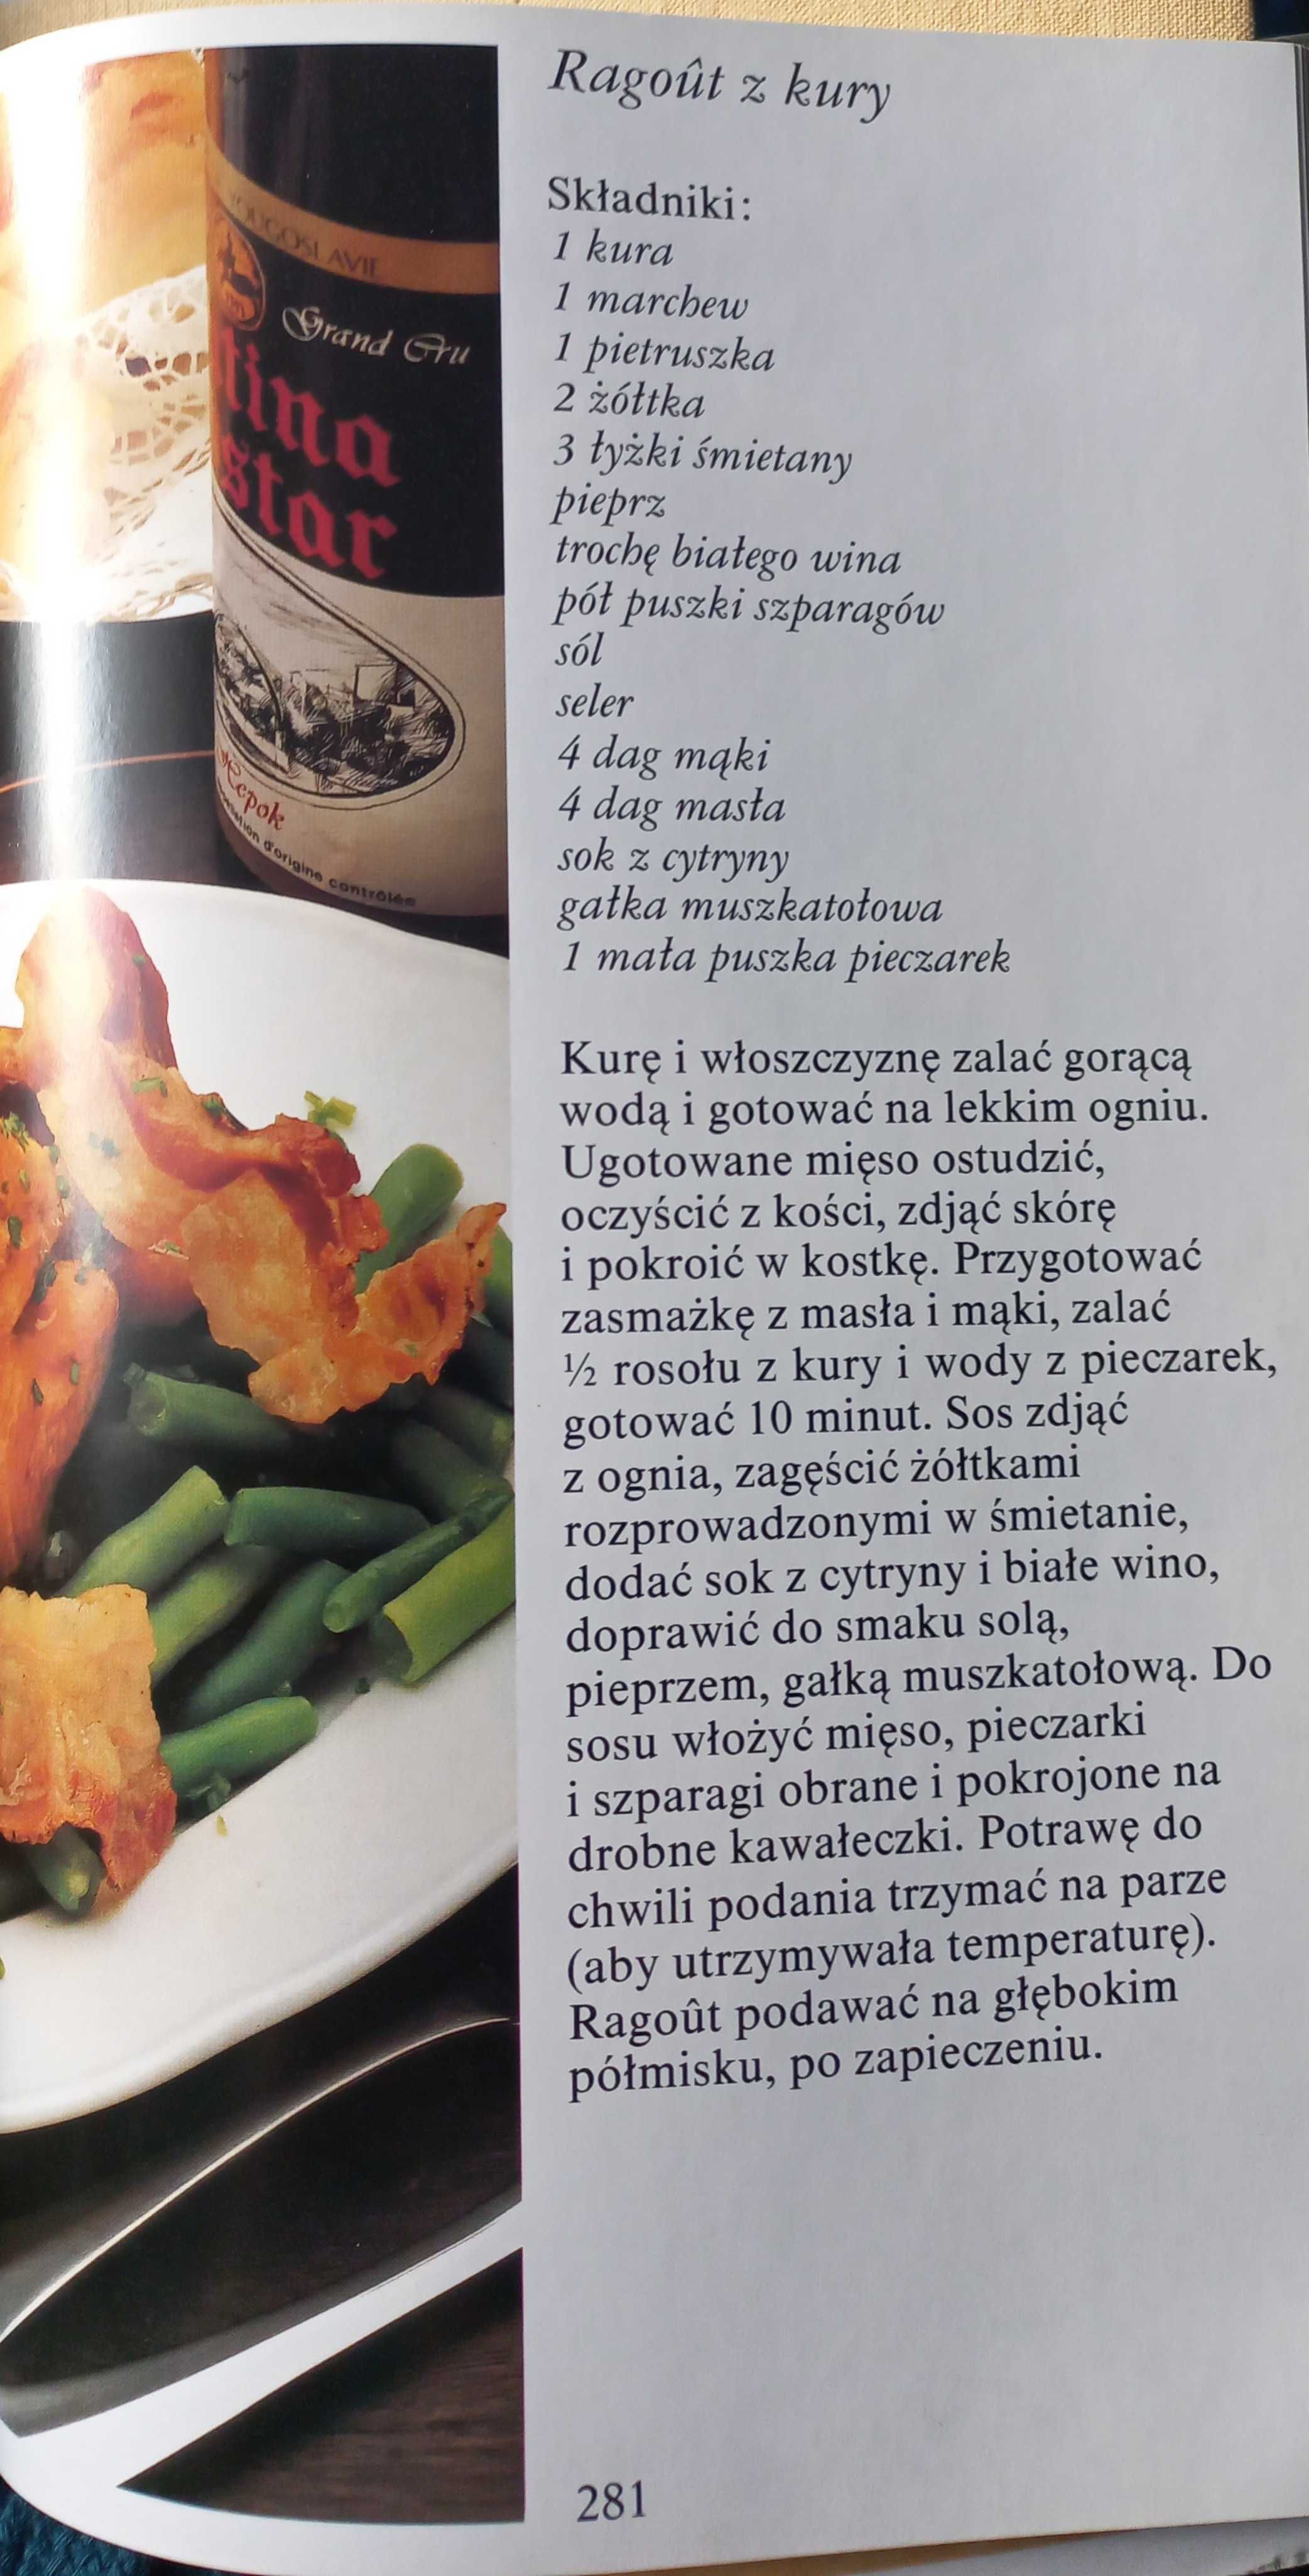 Książka kucharska Przepisy kulinarne narodów Jugosławii